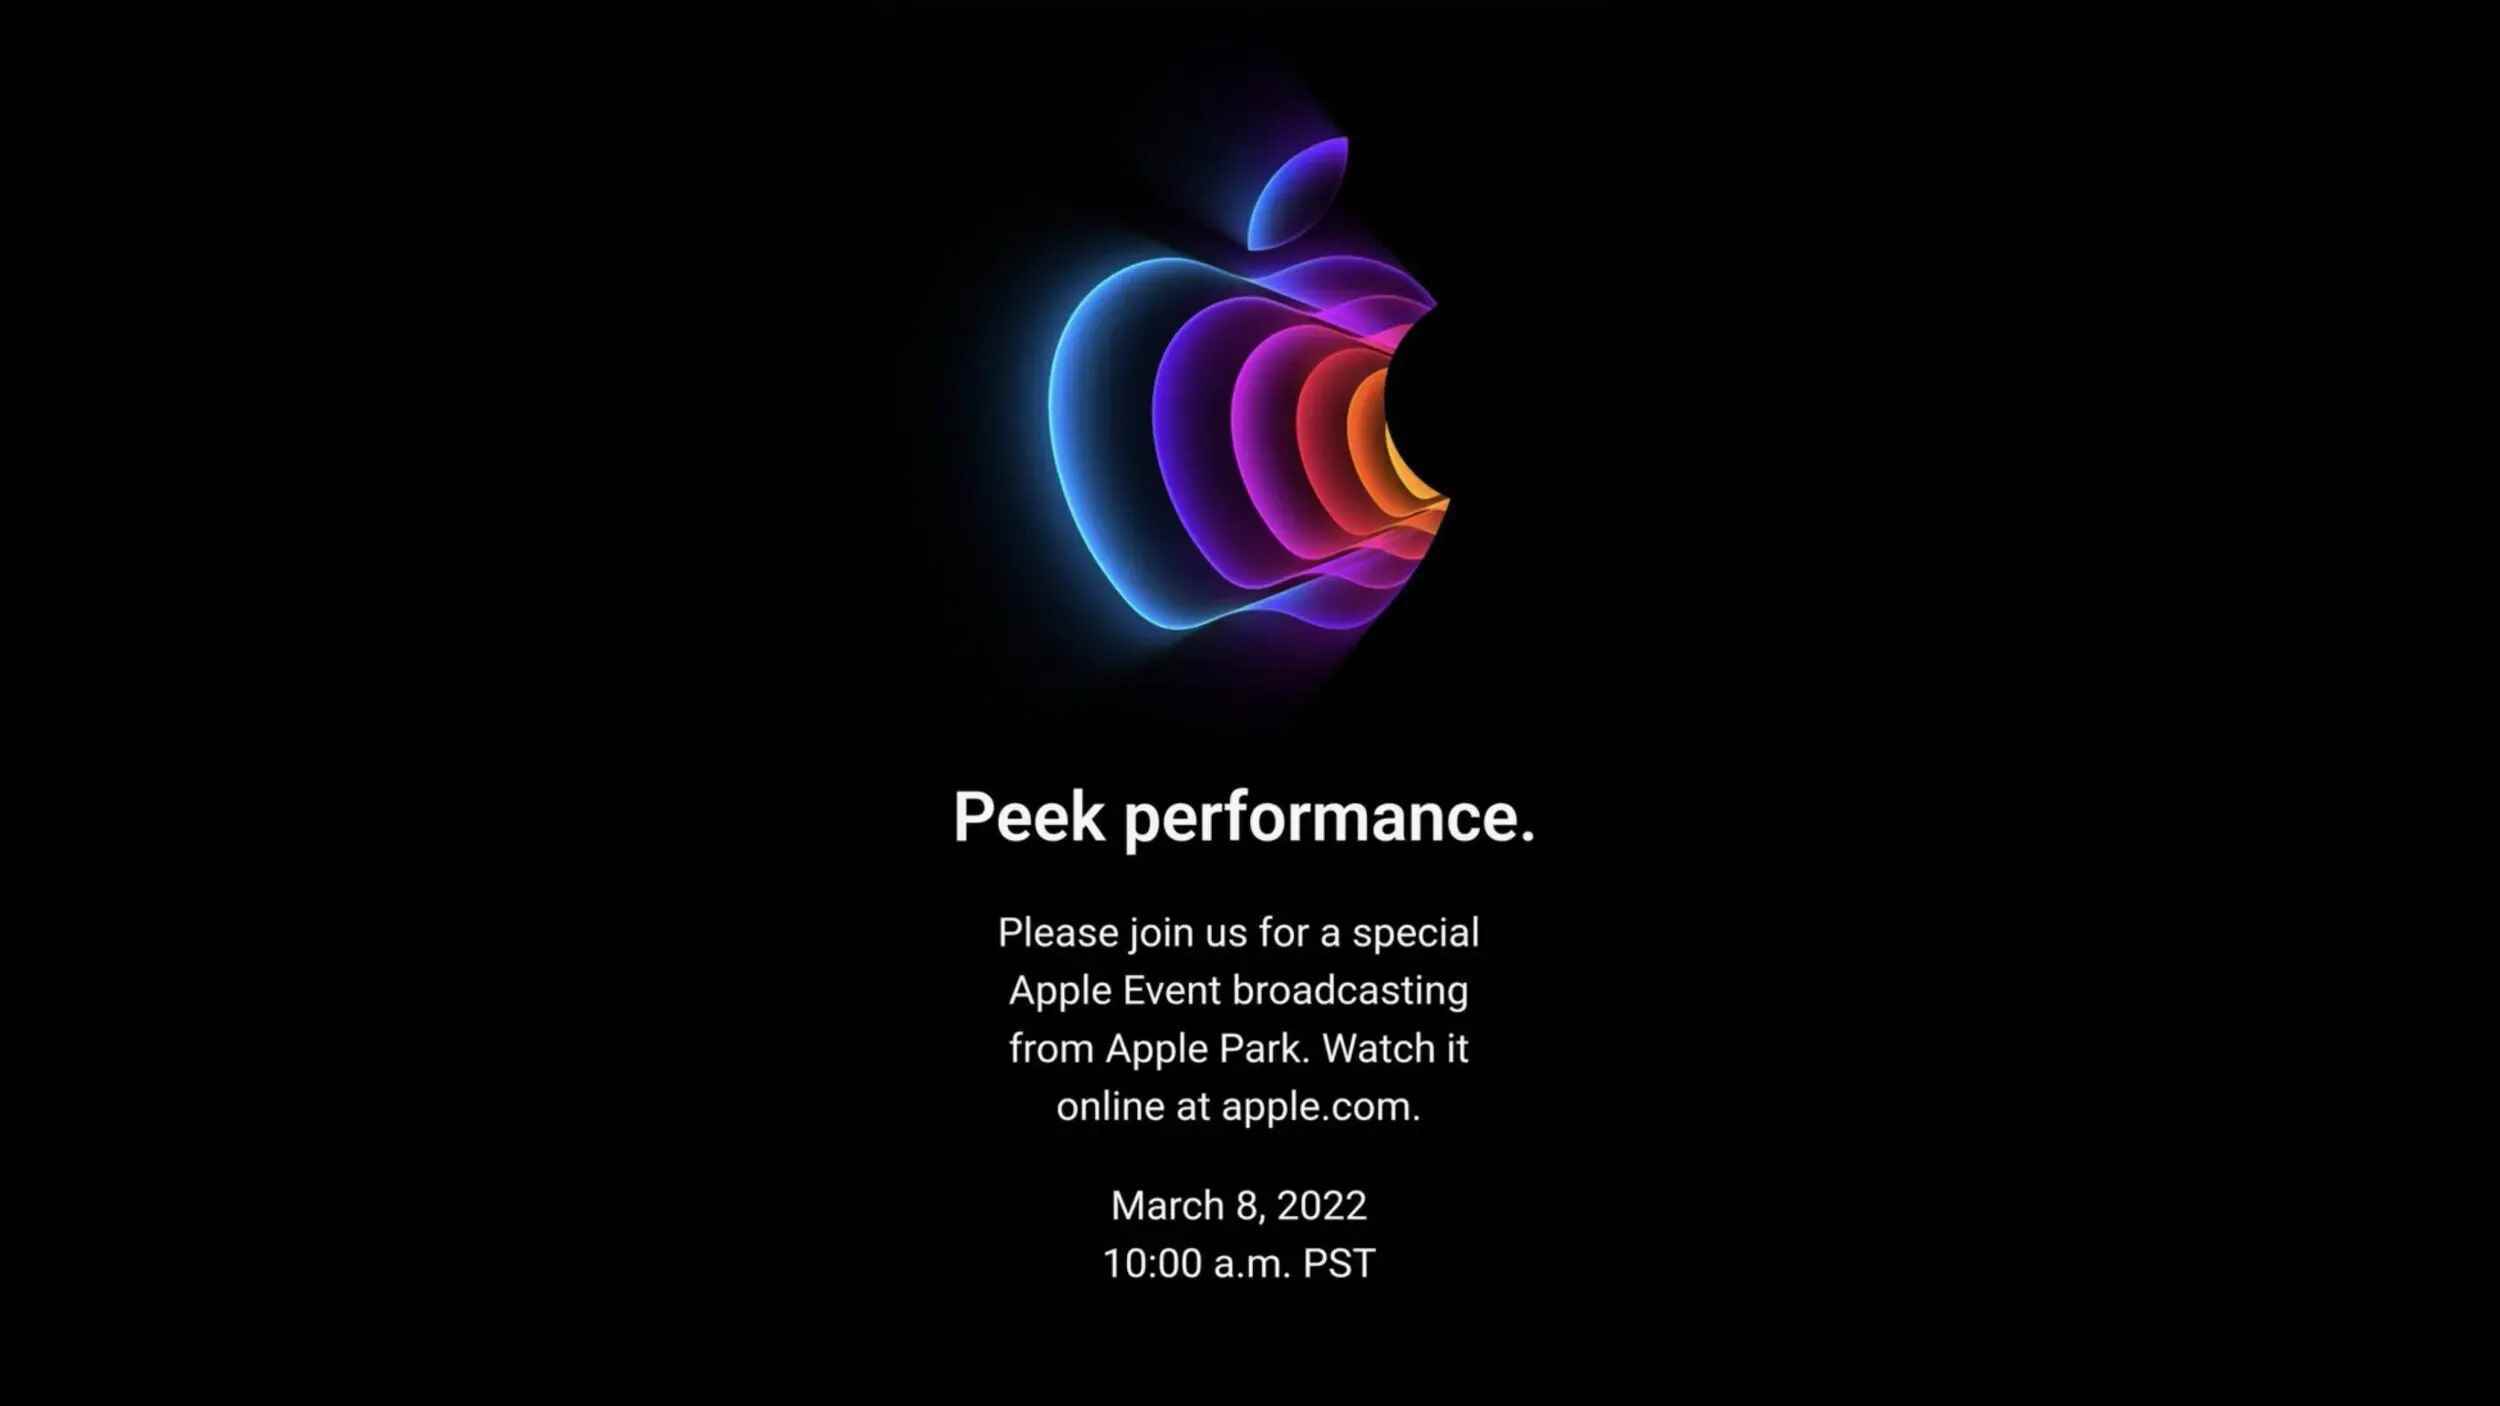 Belki de Apple'ın son etkinliğinin sloganı Eylül 2022'ye saklanmalıydı?  - iPhone 14, iPhone 13S olacak: Steve Jobs'un başyapıtı zirveye ulaşıyor, ancak Apple bundan Max'i çıkarıyor